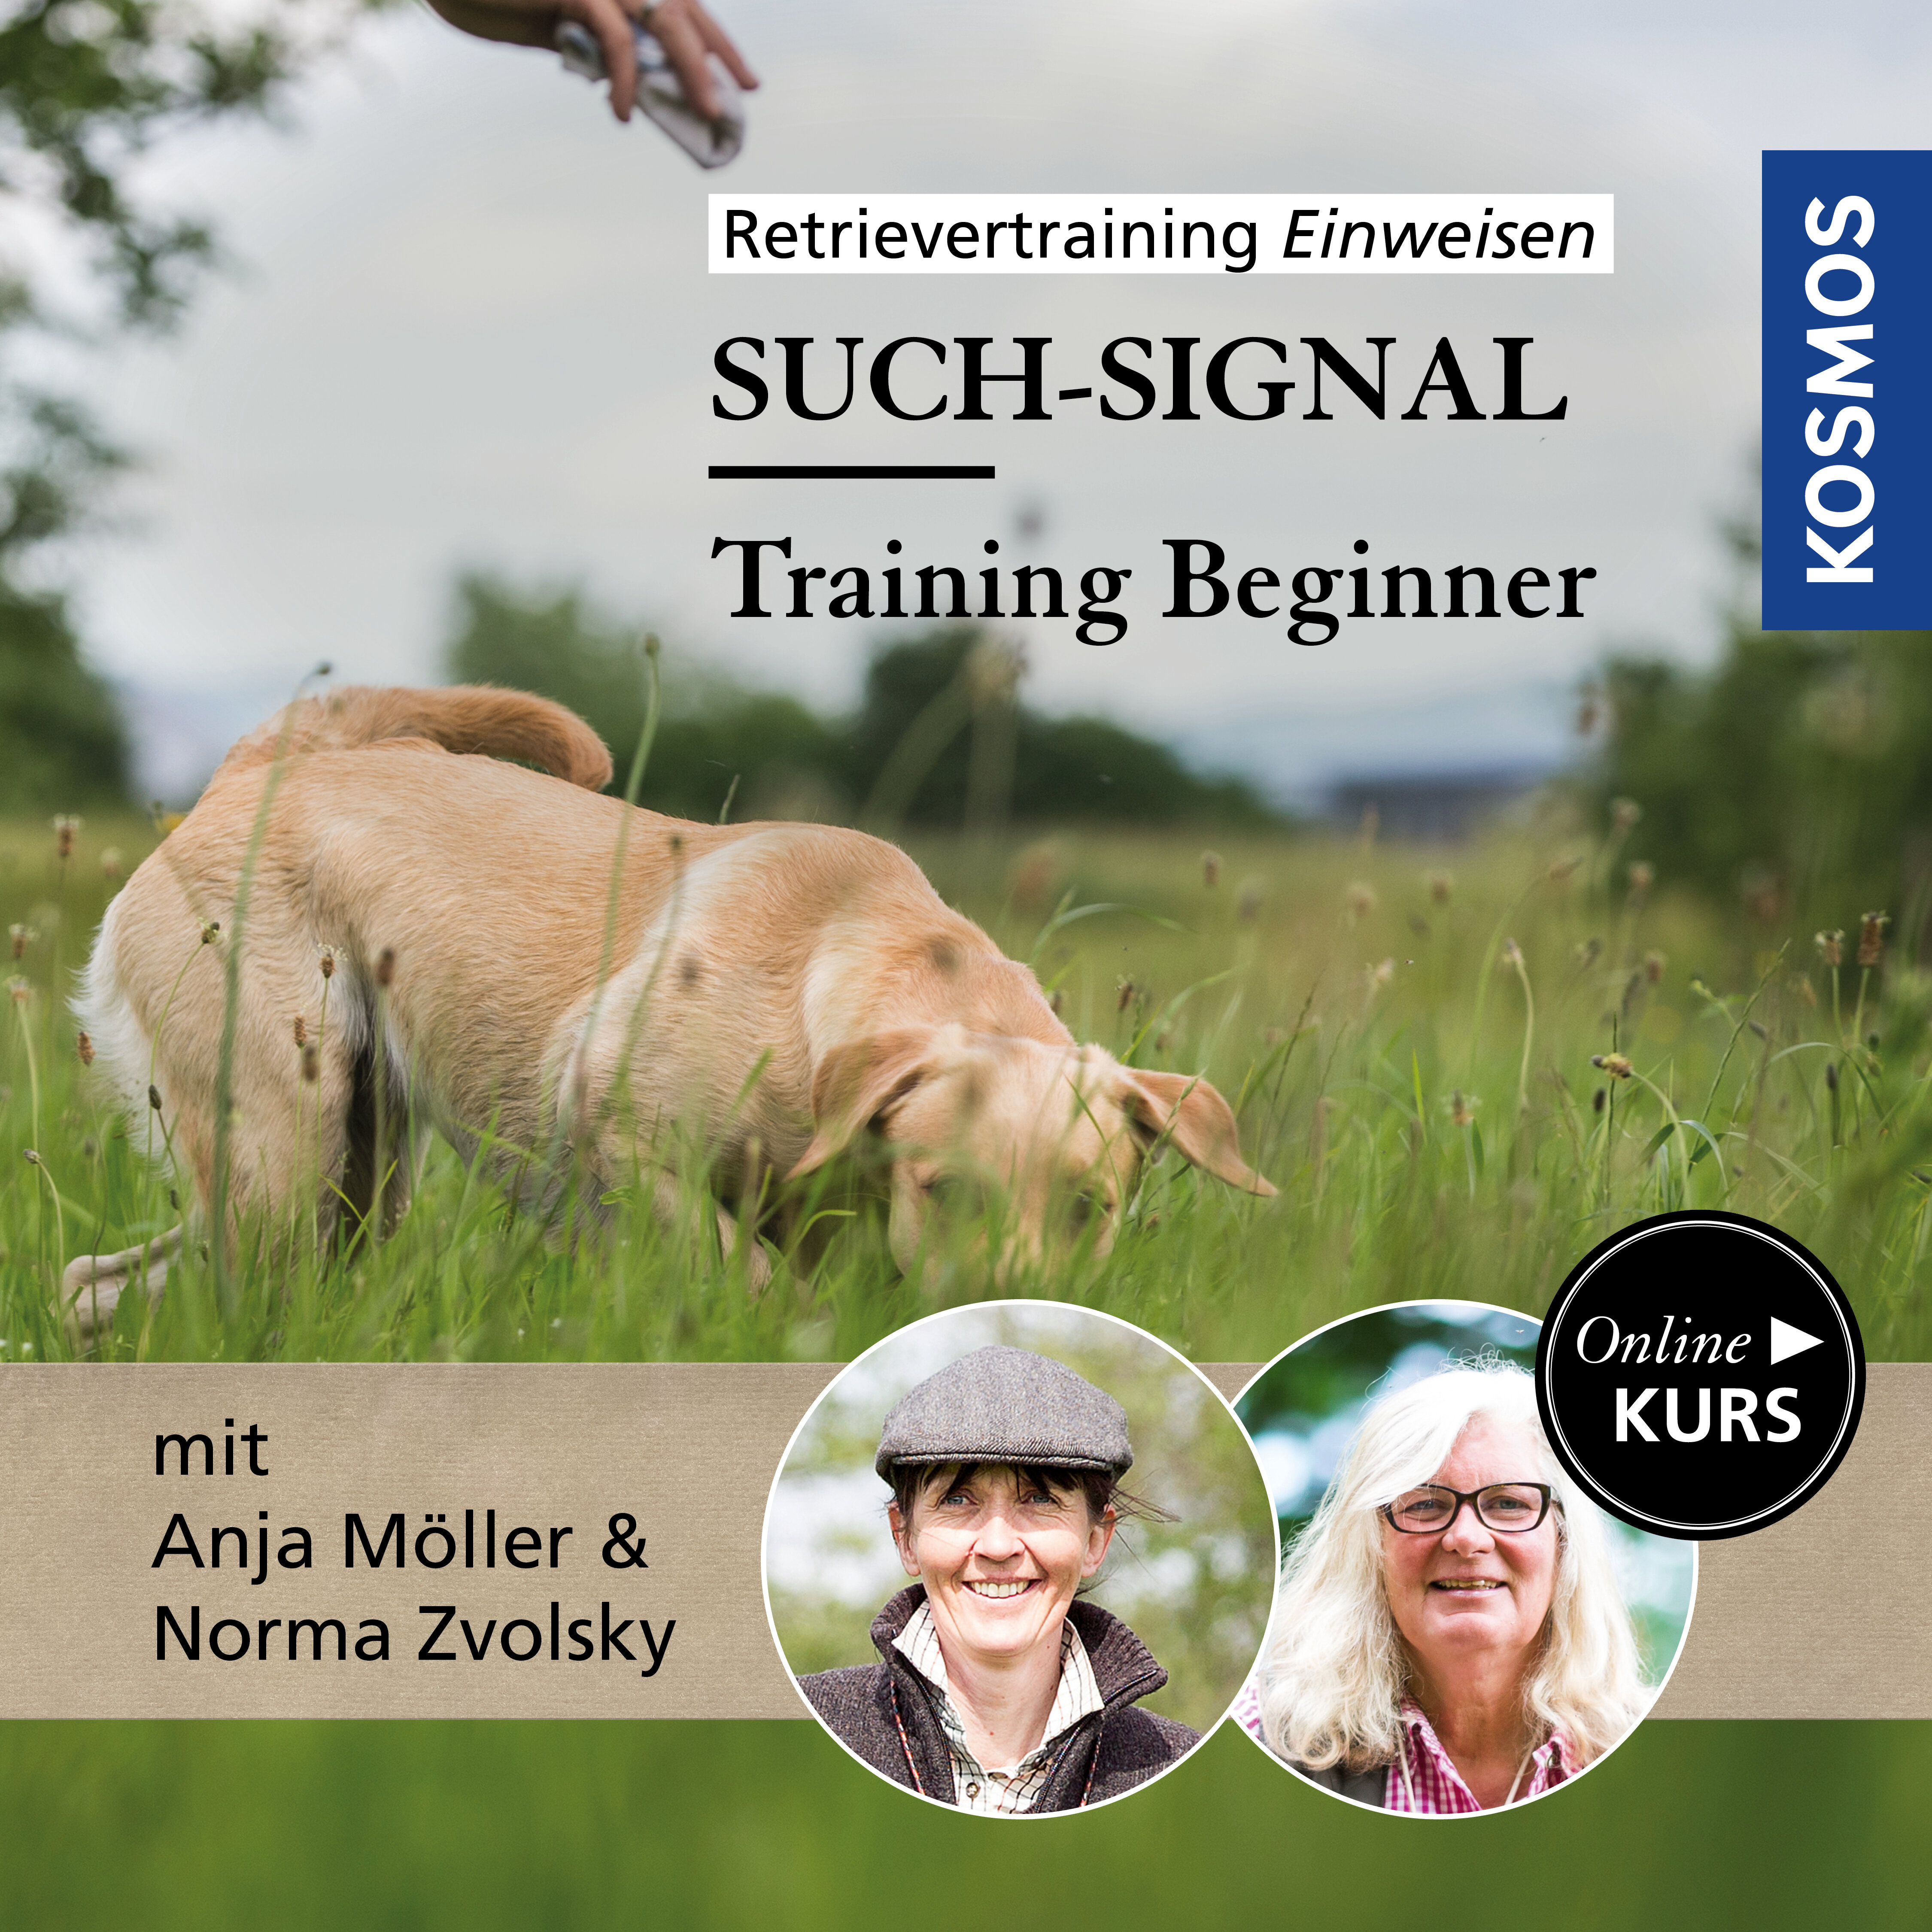 Retrievertraining Einweisen – Training Beginner Such-Signal